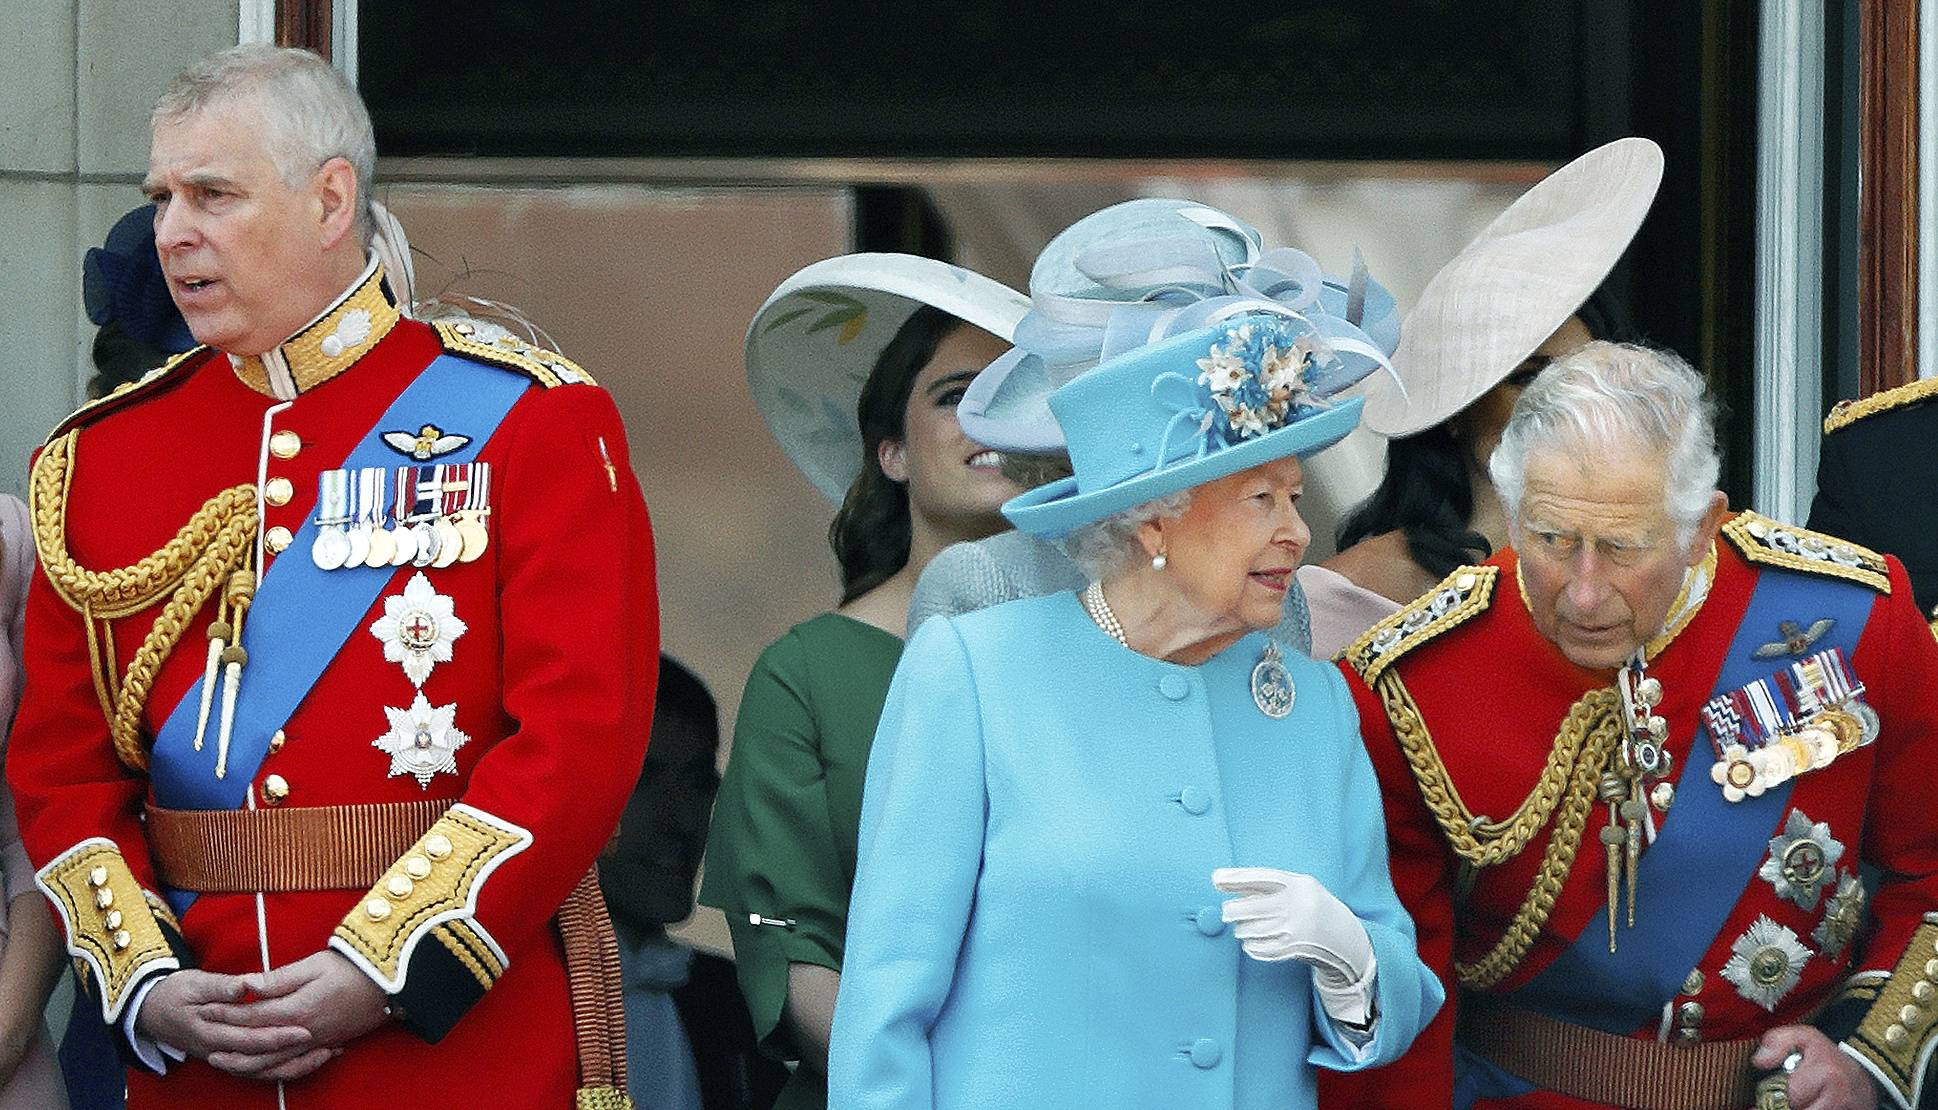 LEl prncipe Andrs, la reina Isabel II y el prncipe Carlosdurante el Trooping The Colour de 2018.